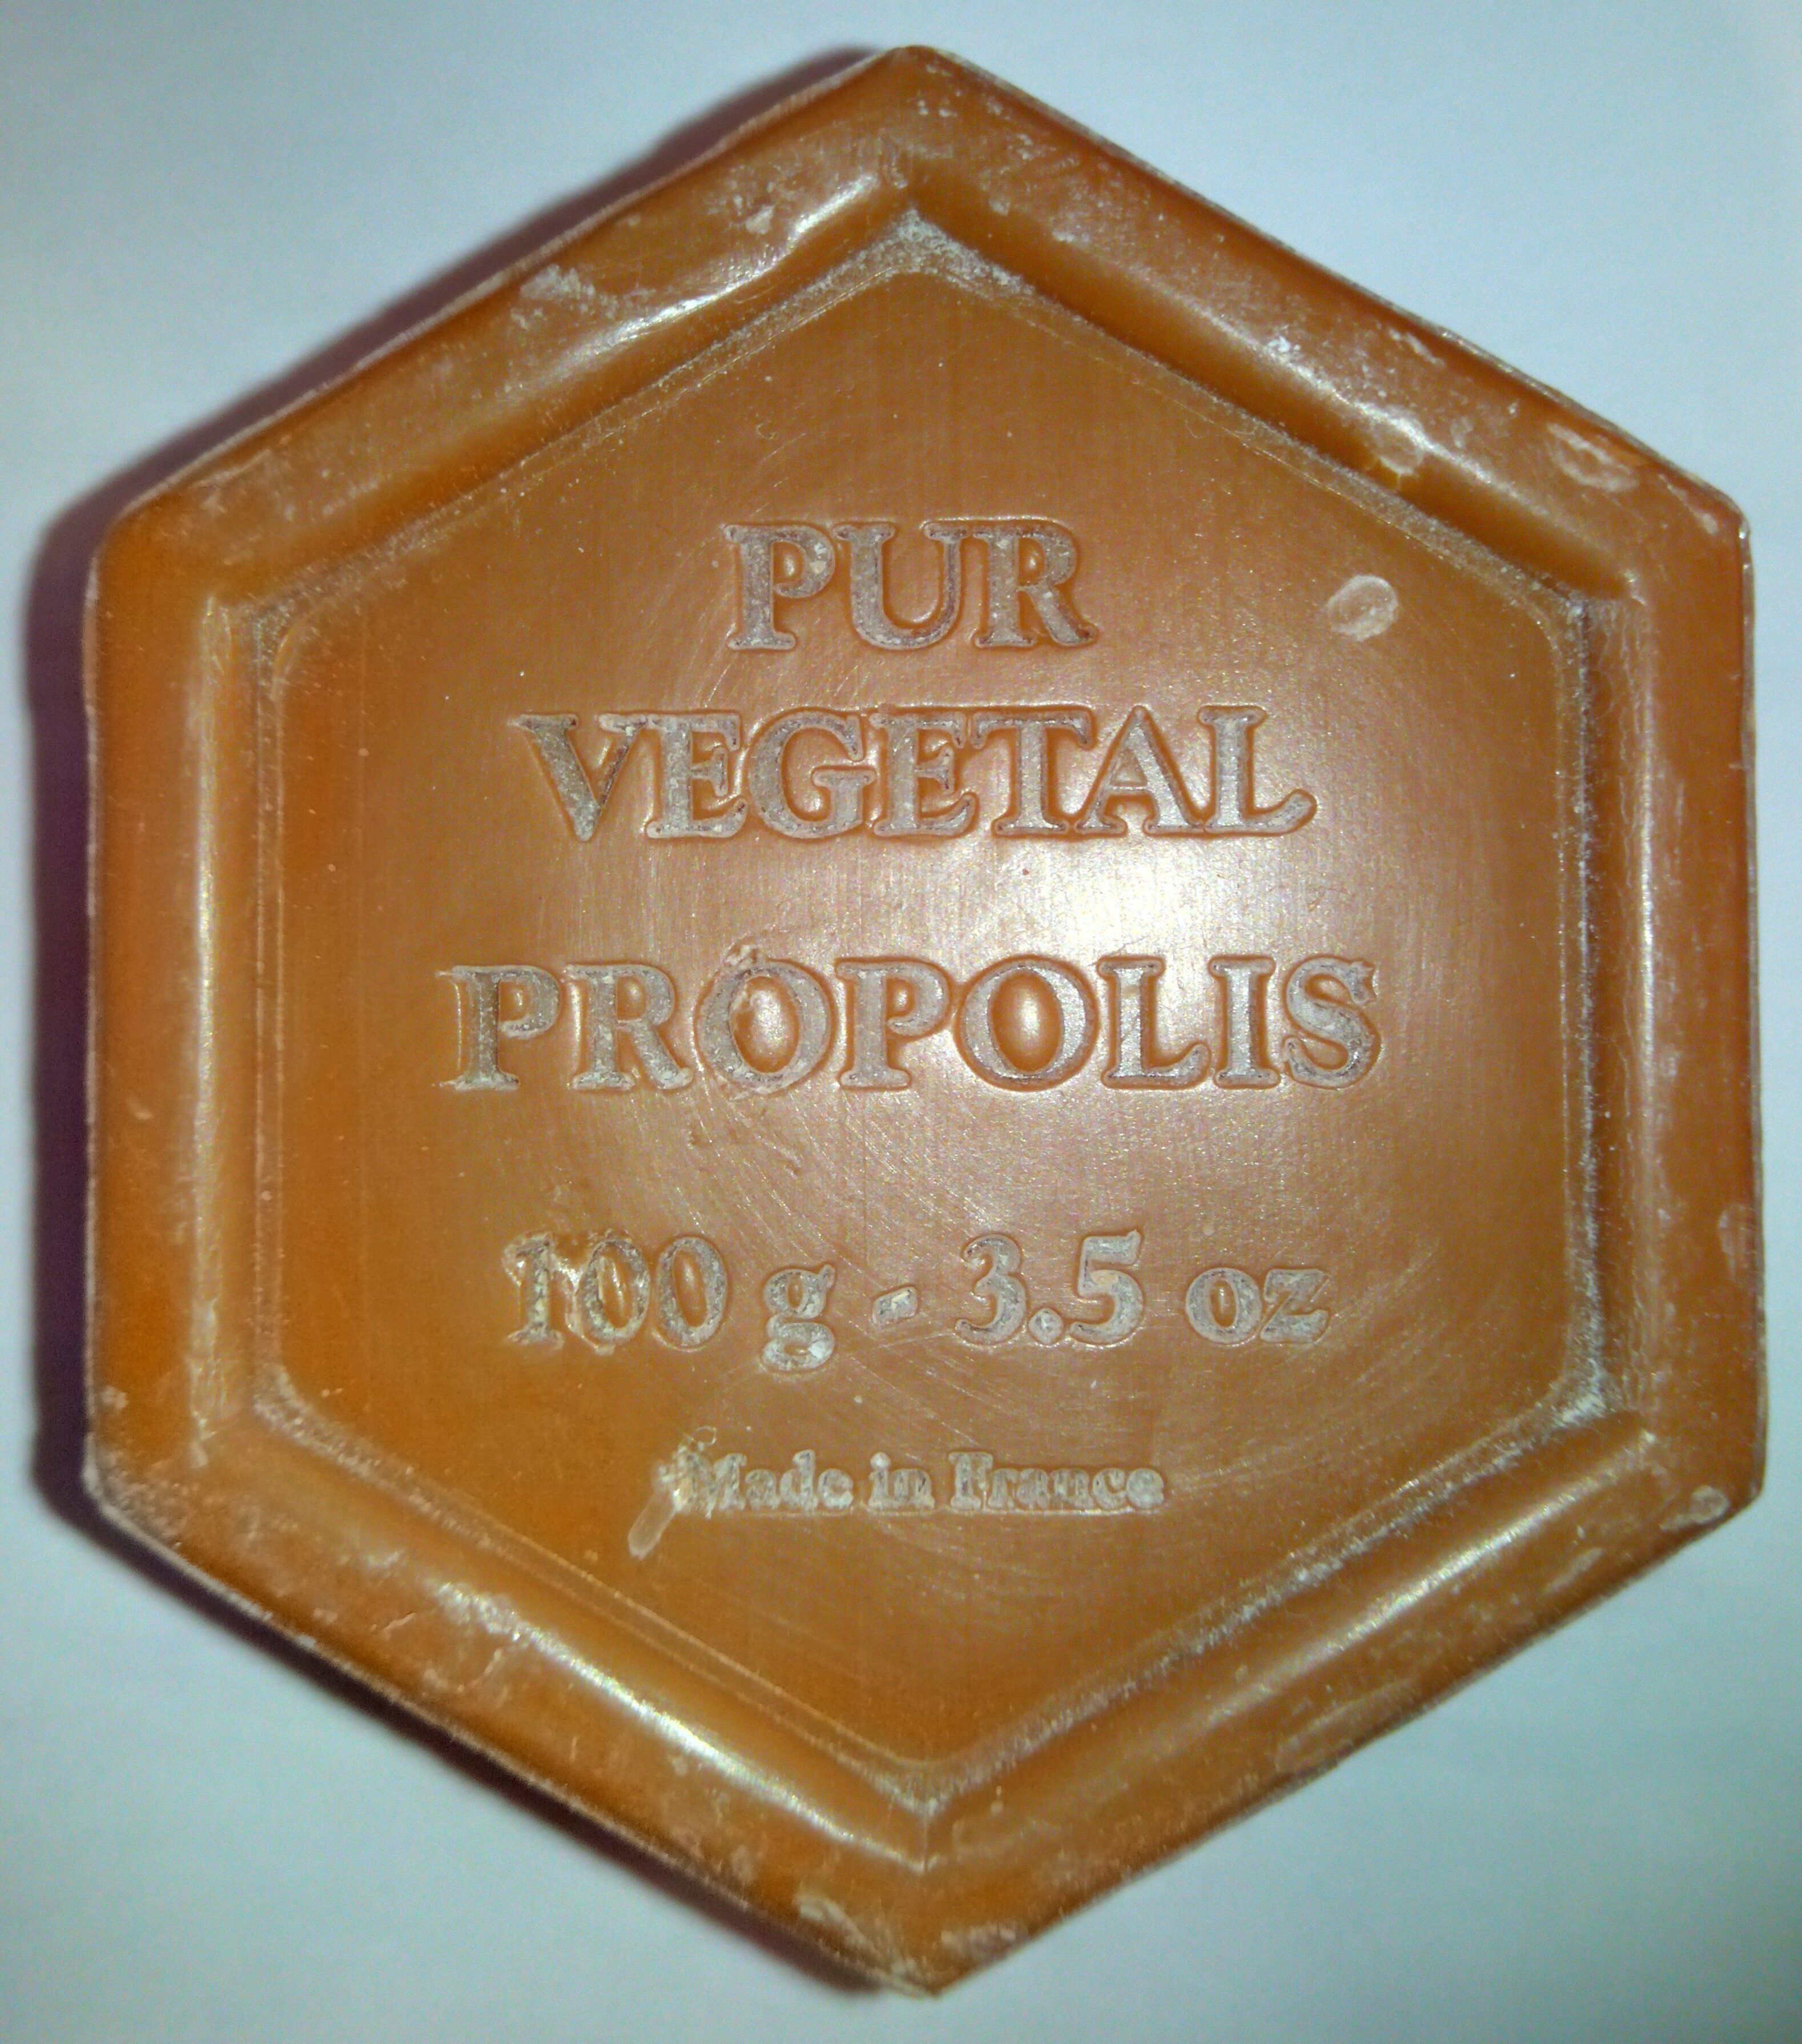 Savon à la Propolis 100g - Produkt - fr